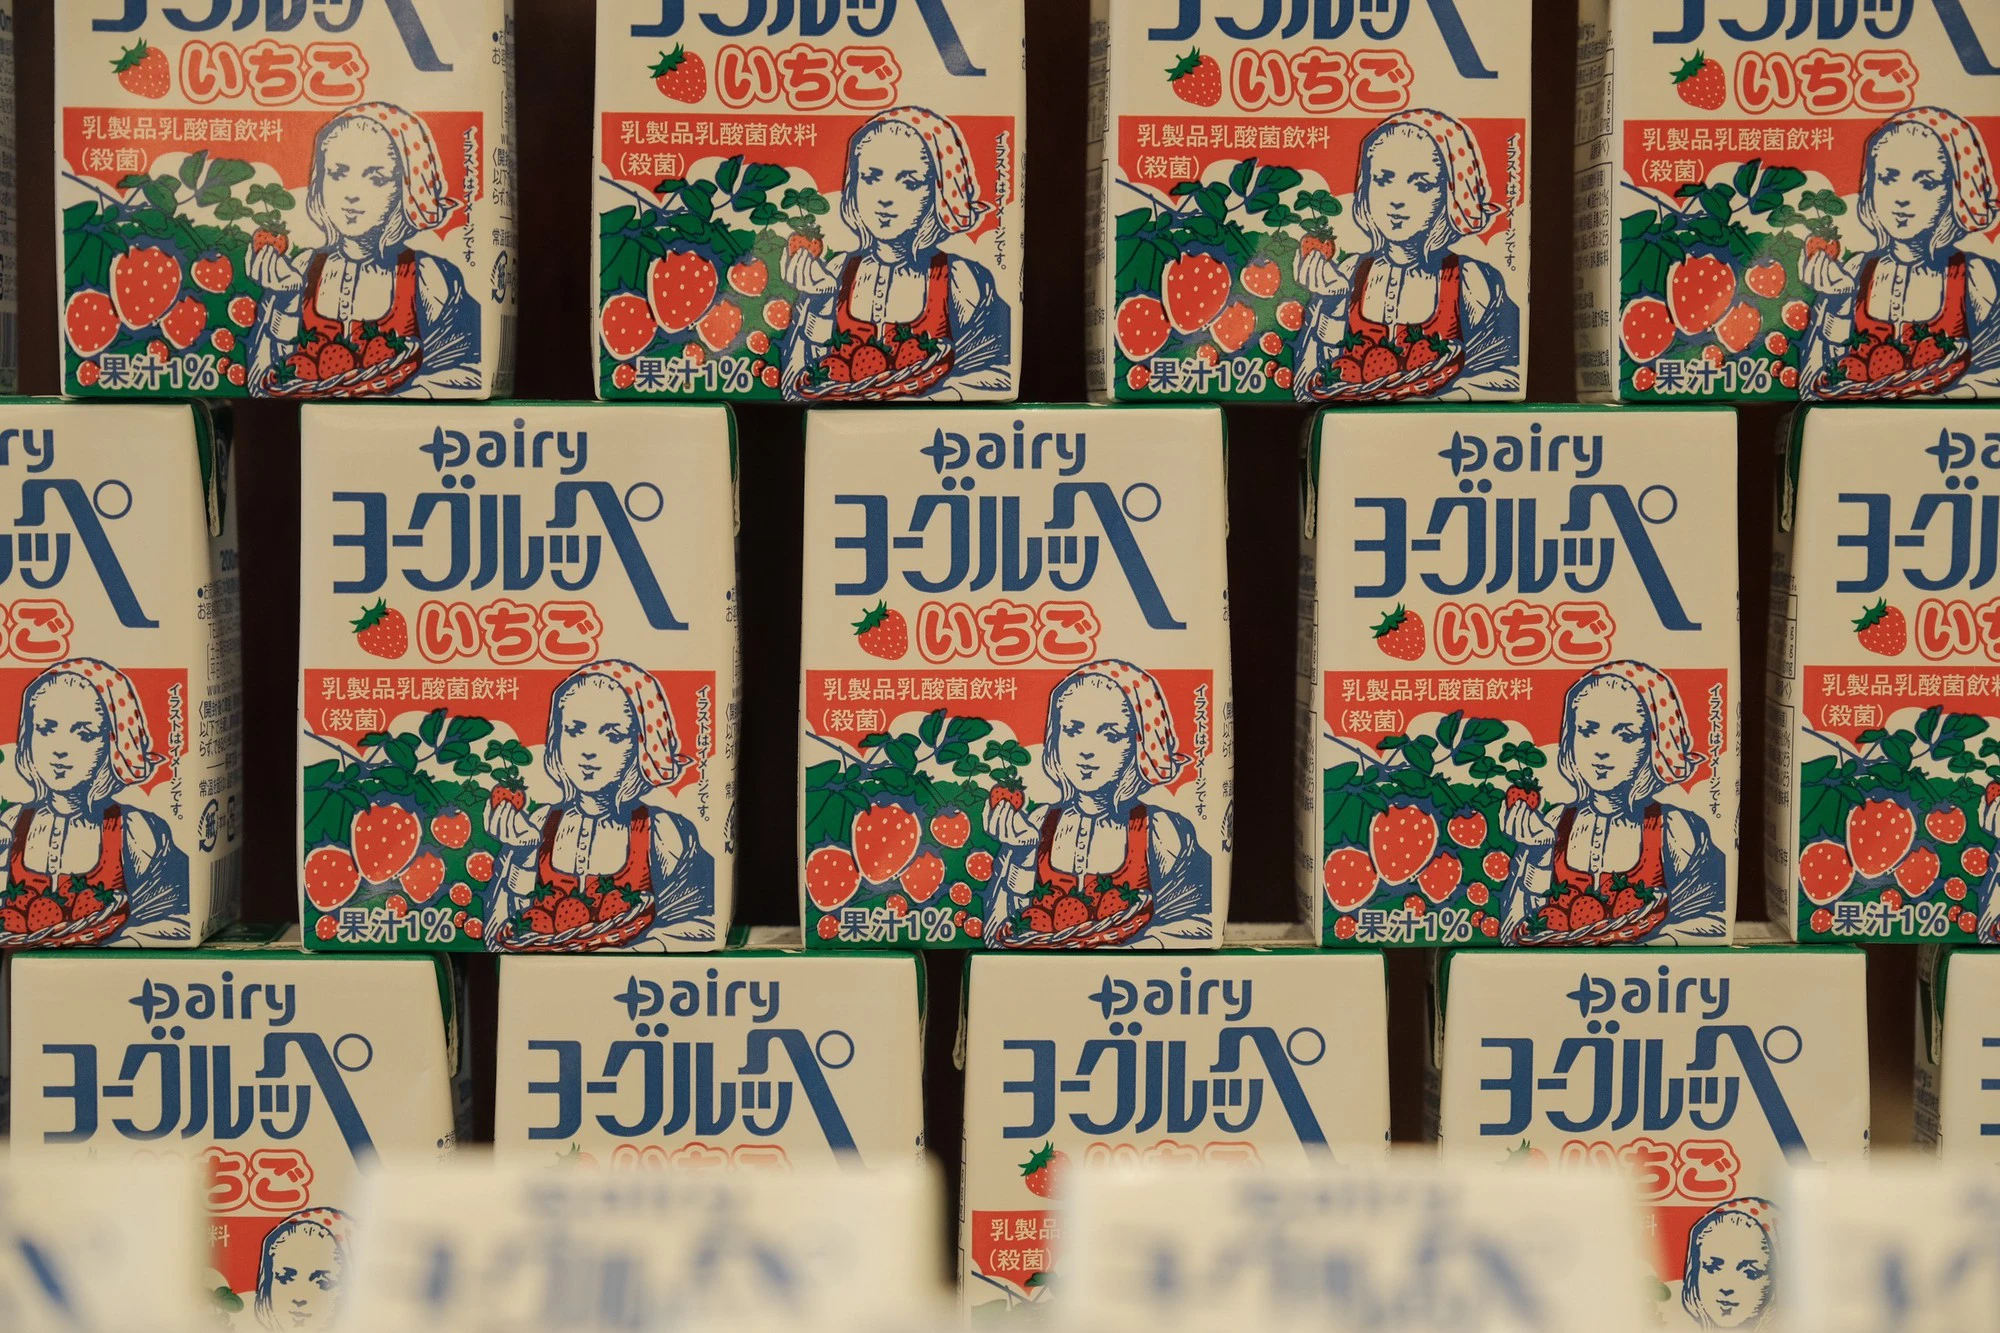 Thương hiệu sữa được yêu thích số 1 tại đất nước Nhật Bản đã về tới Việt Nam - Ảnh 3.